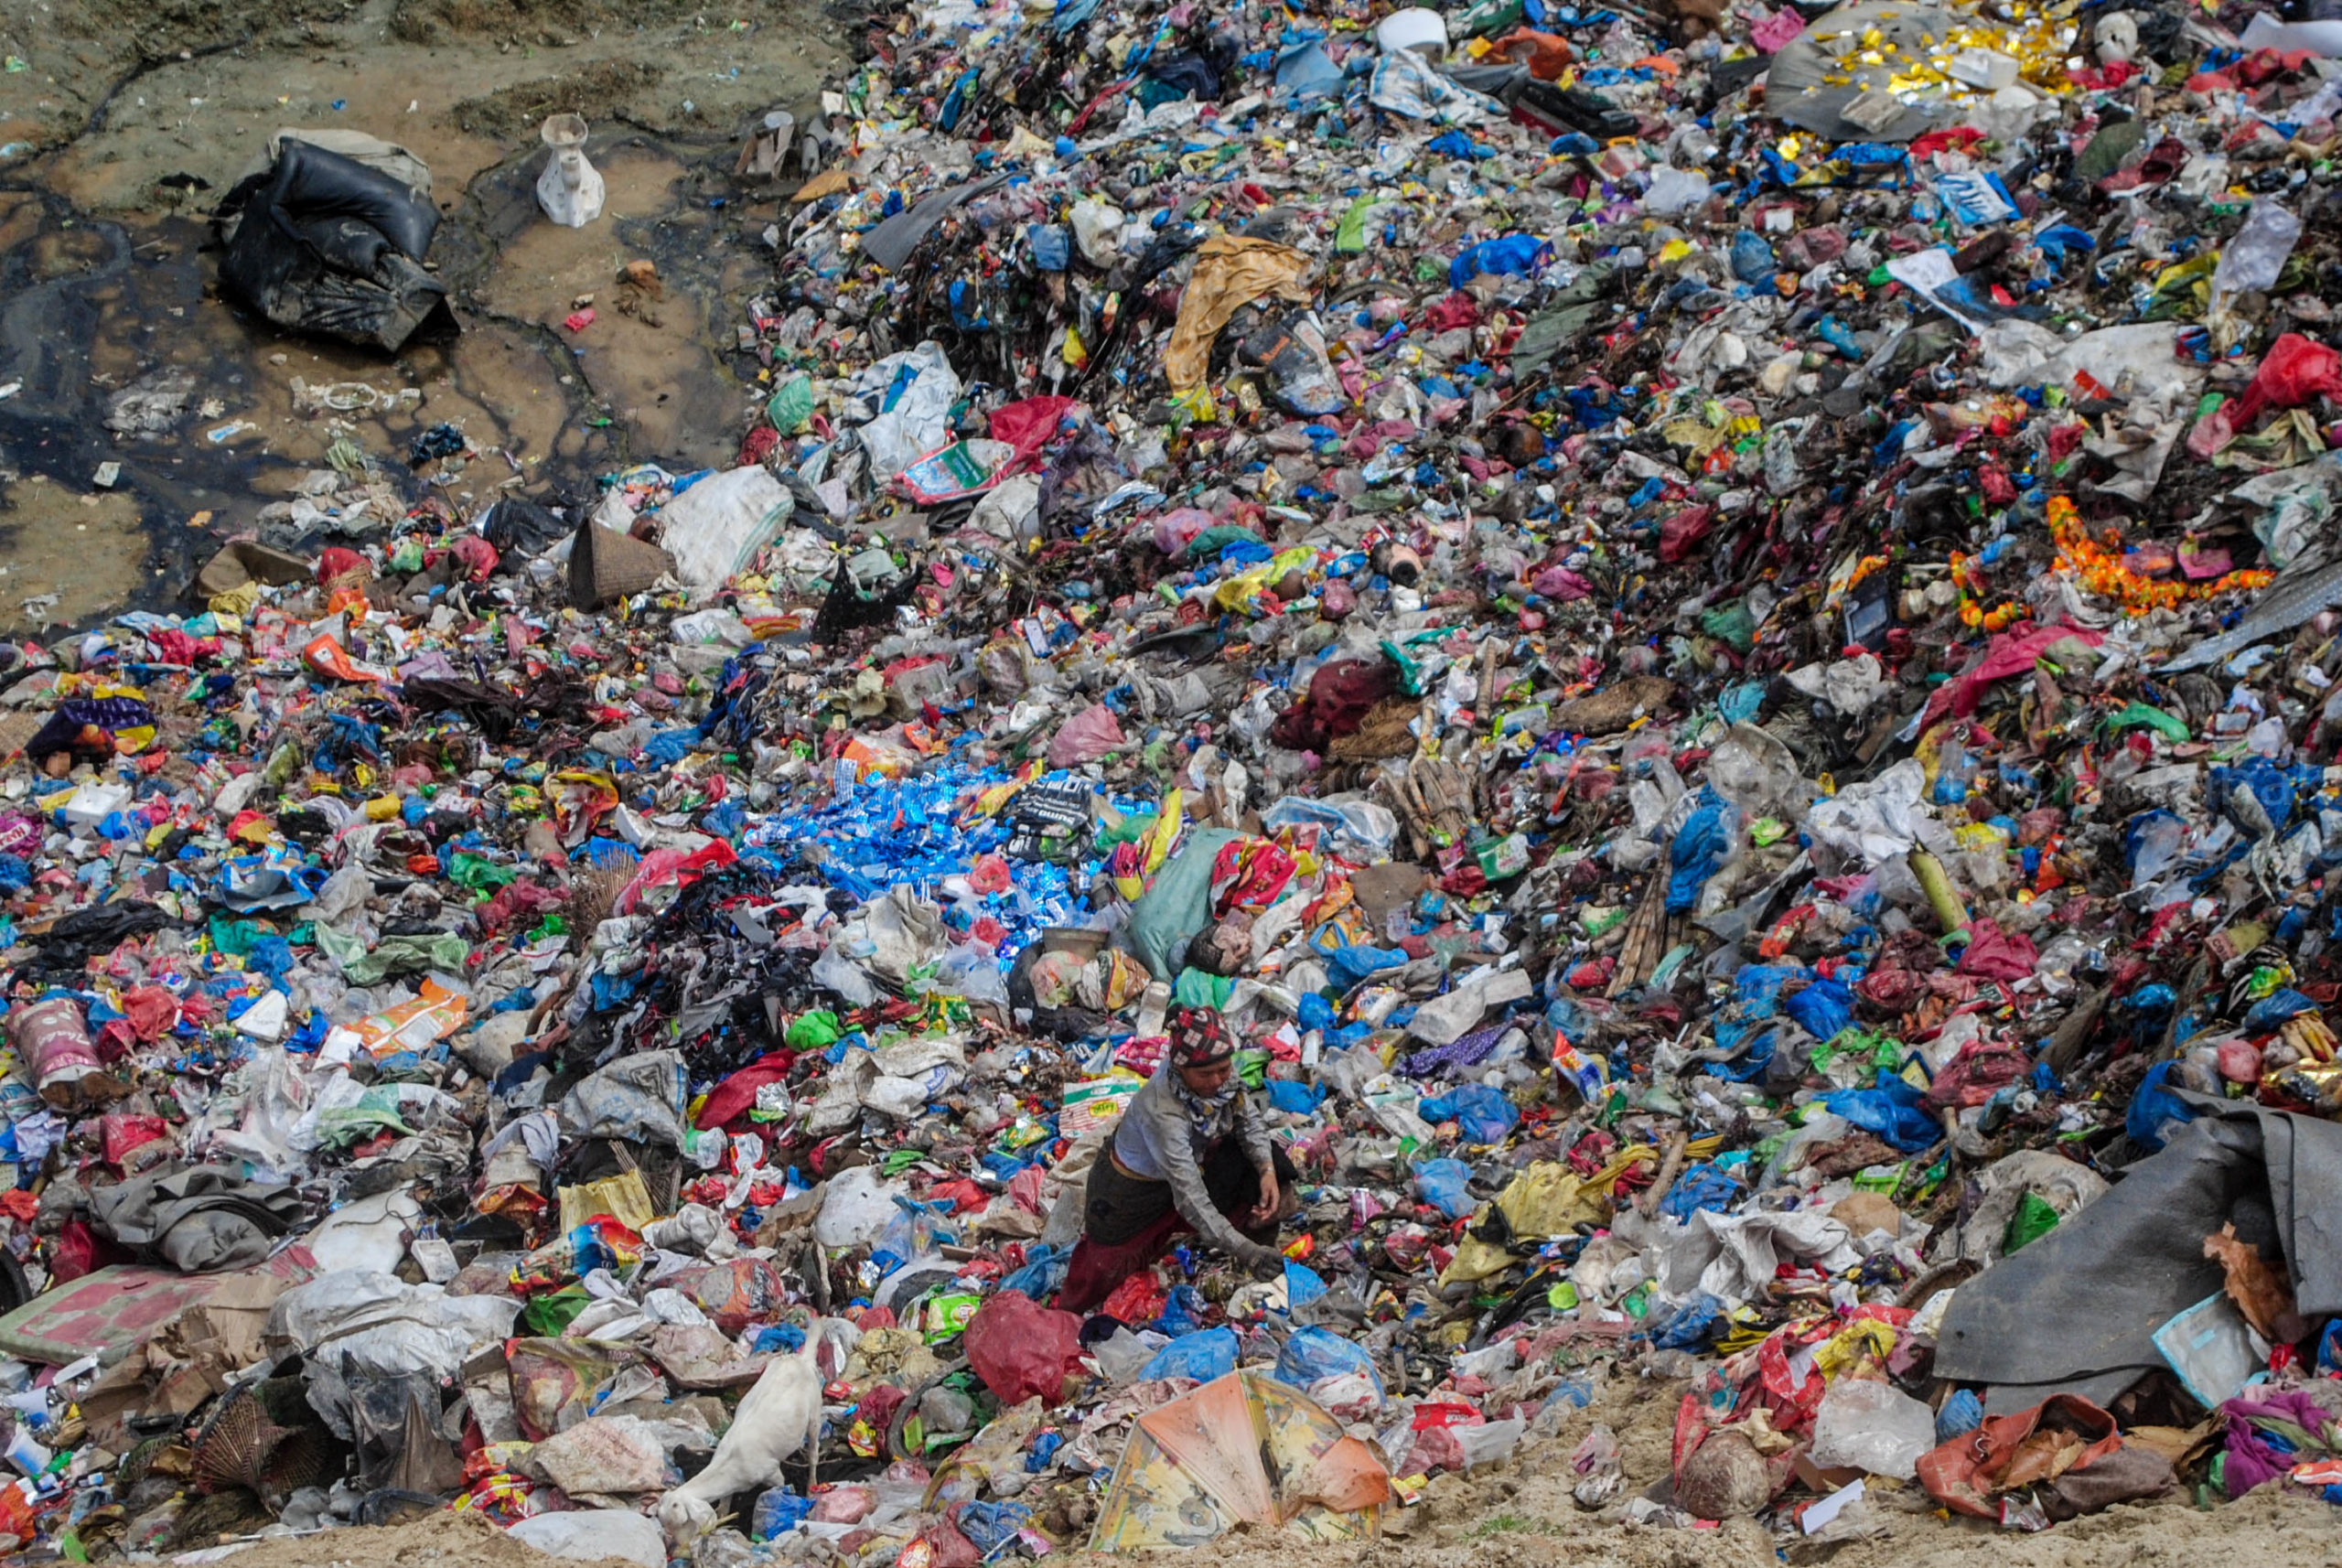 Garbage pile up in Kathmandu yet again